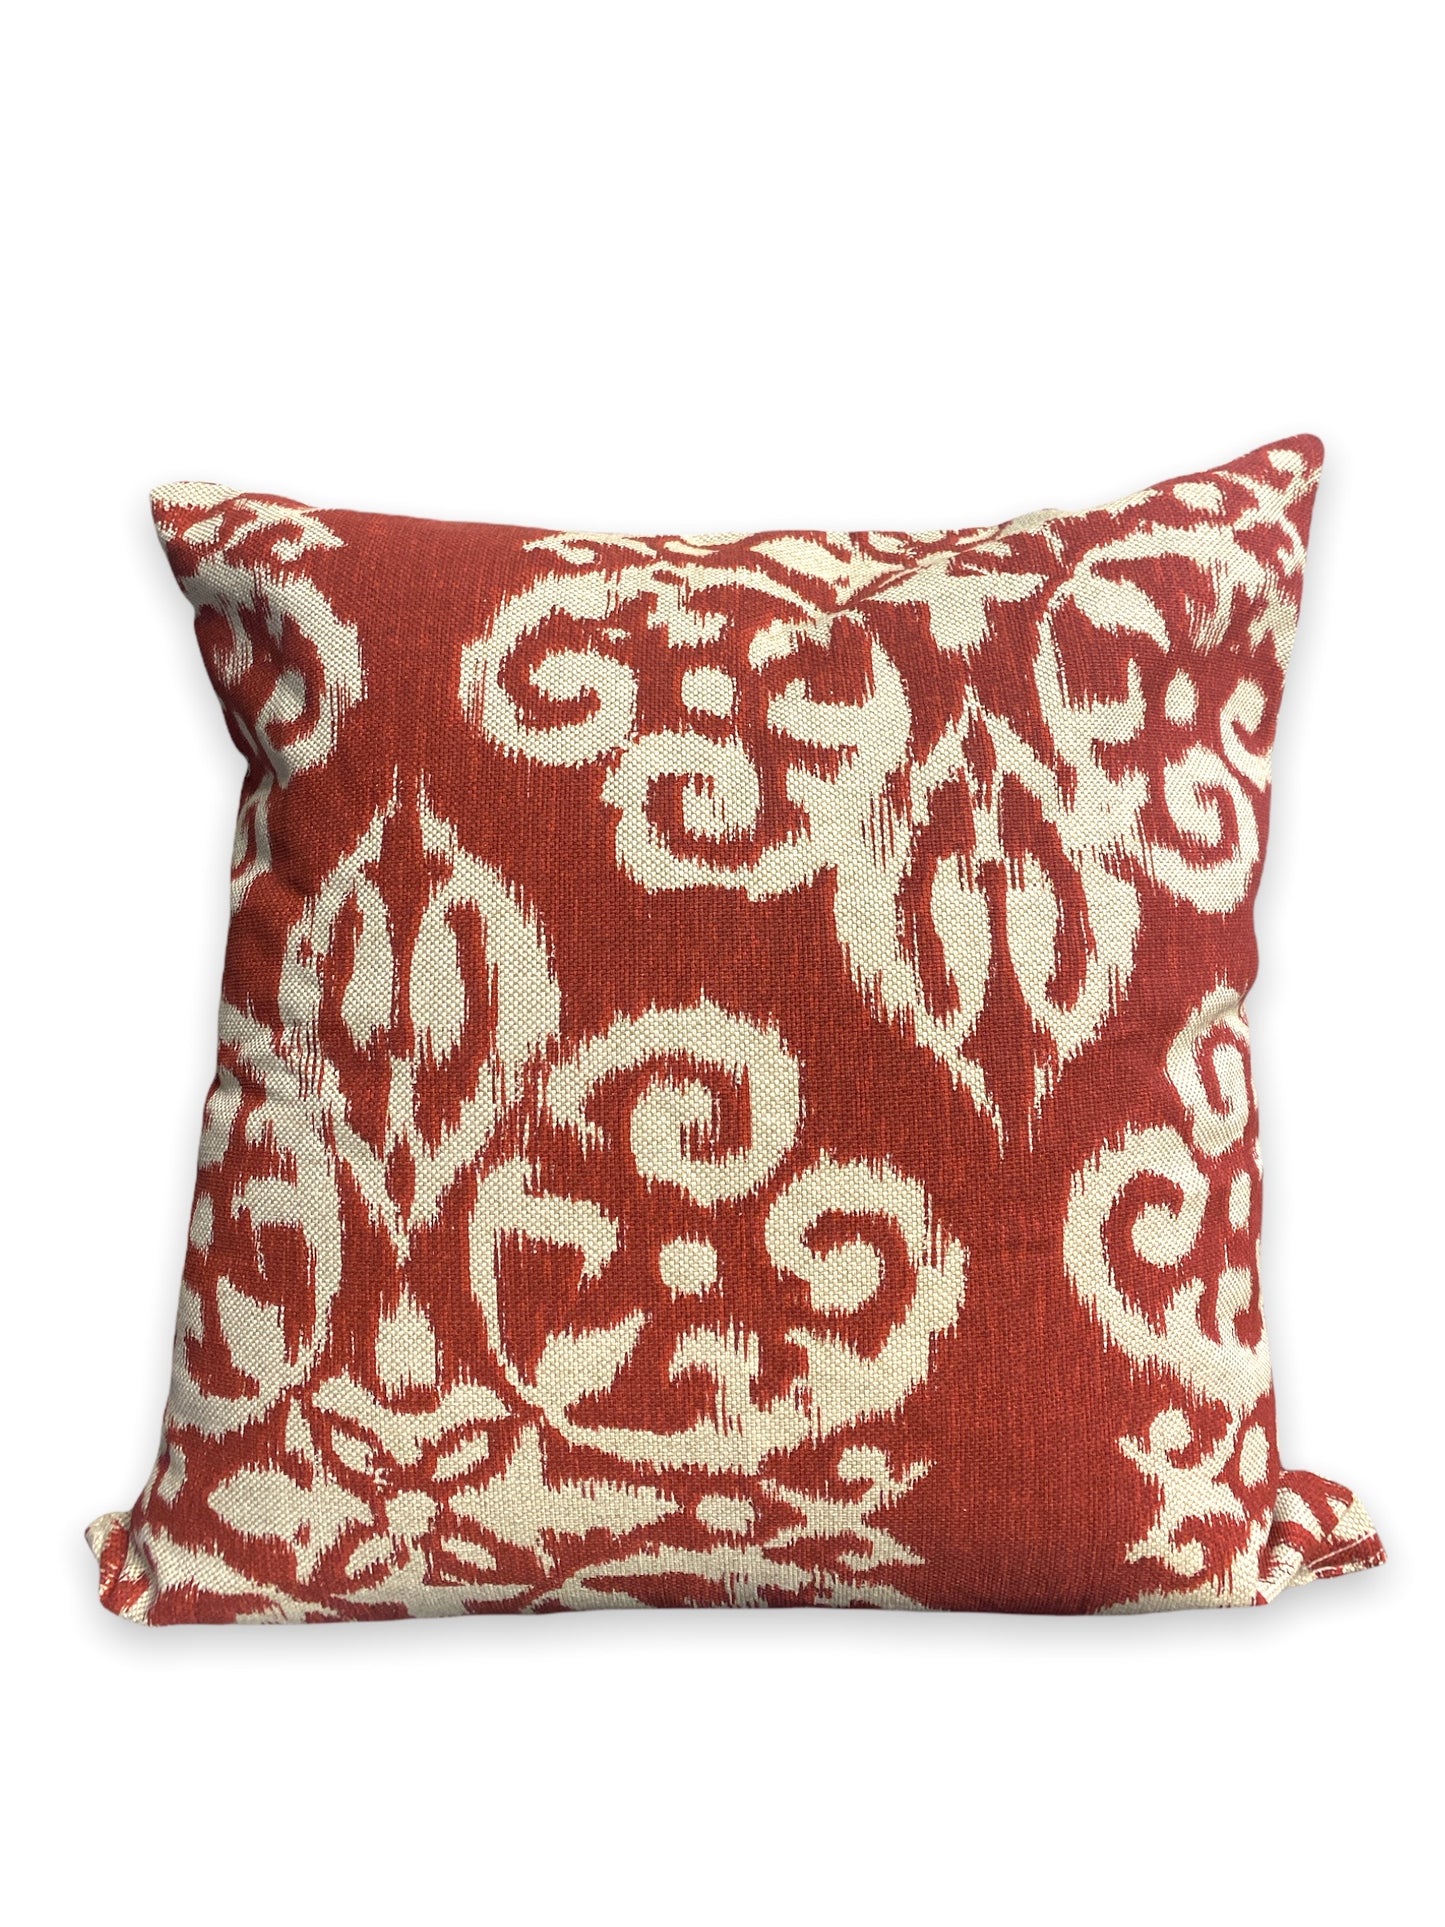 red pillow covers mishawaka indiana